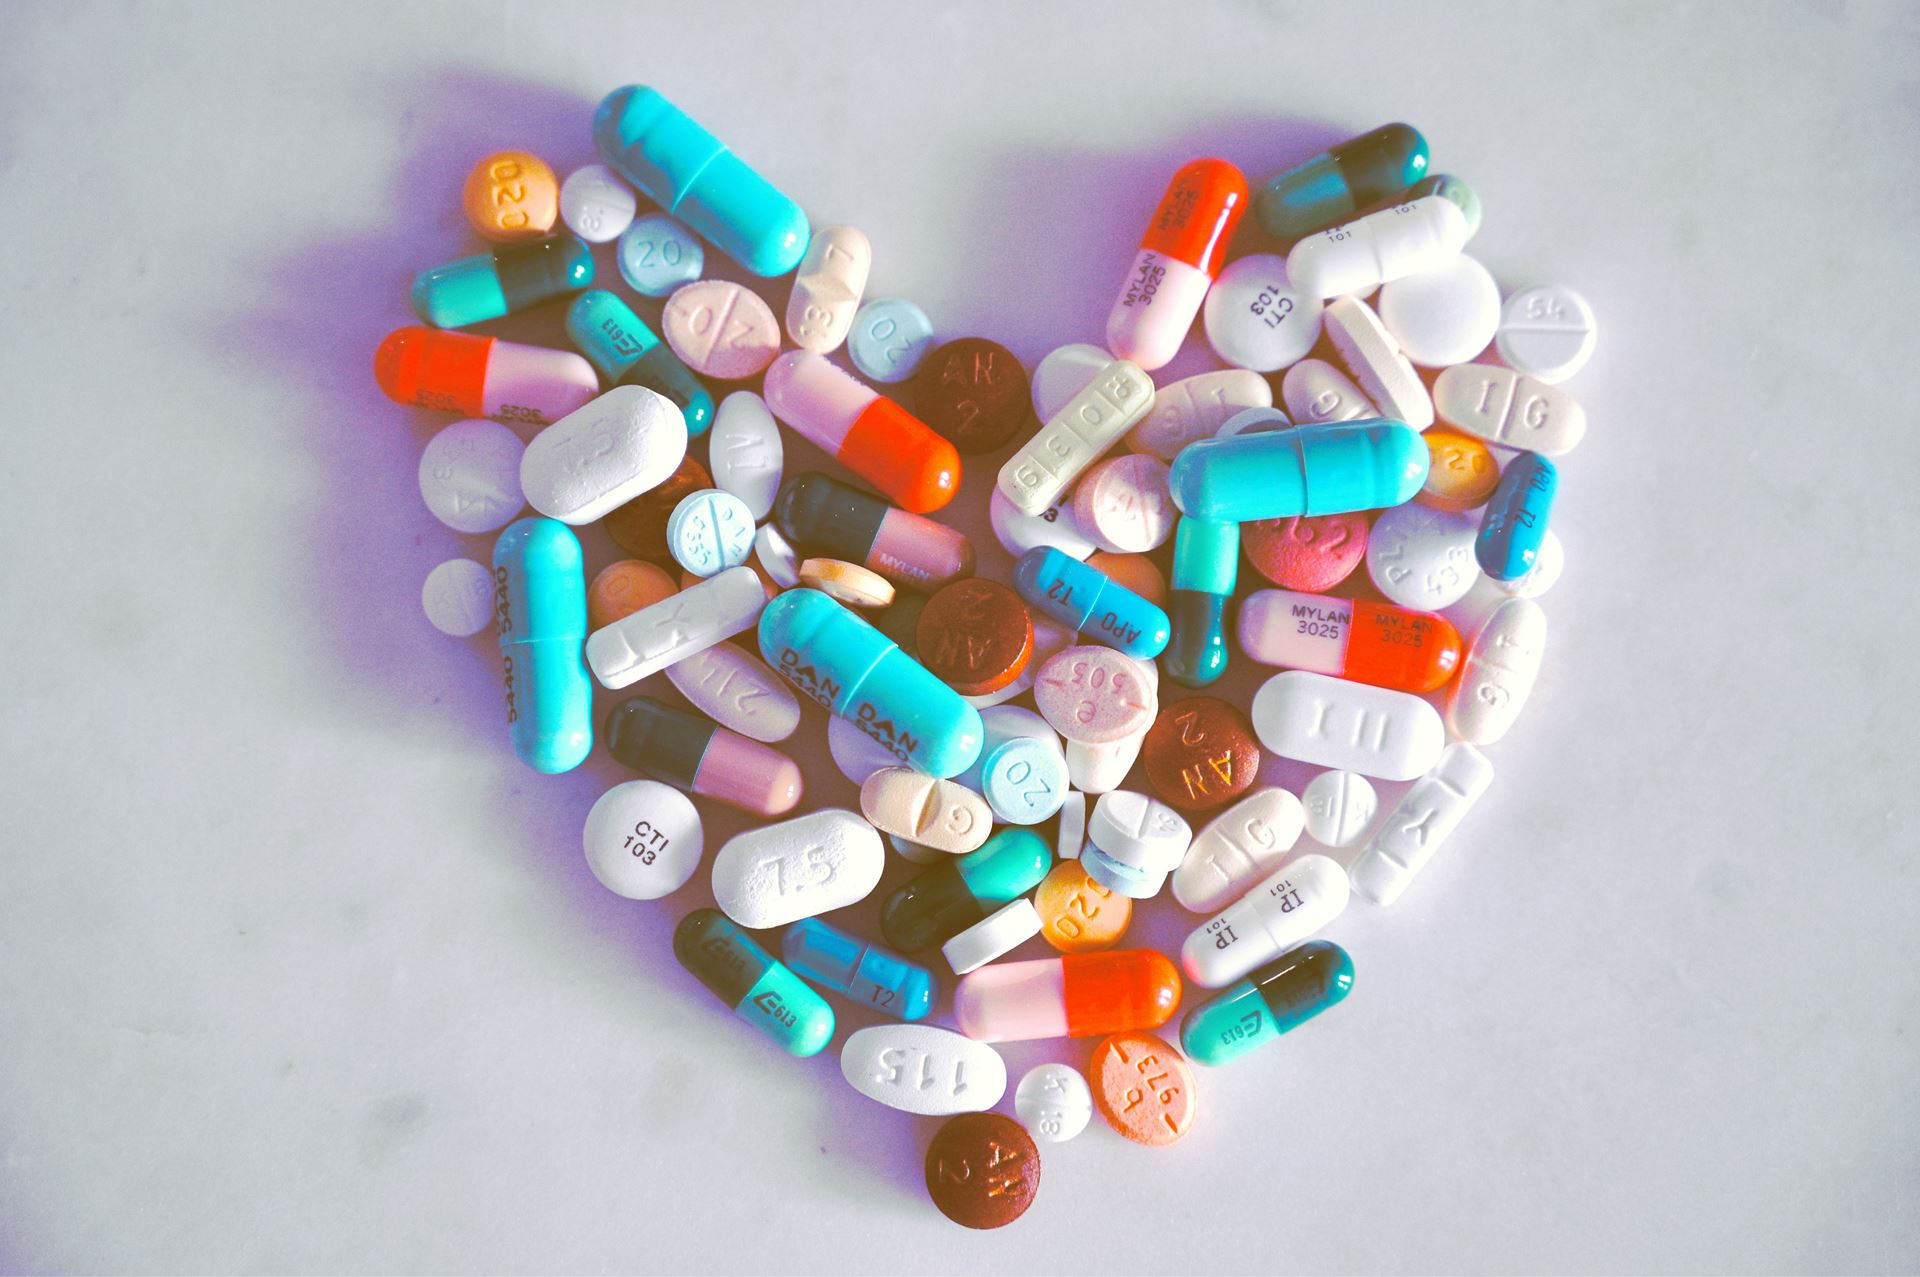 medications in heart shape